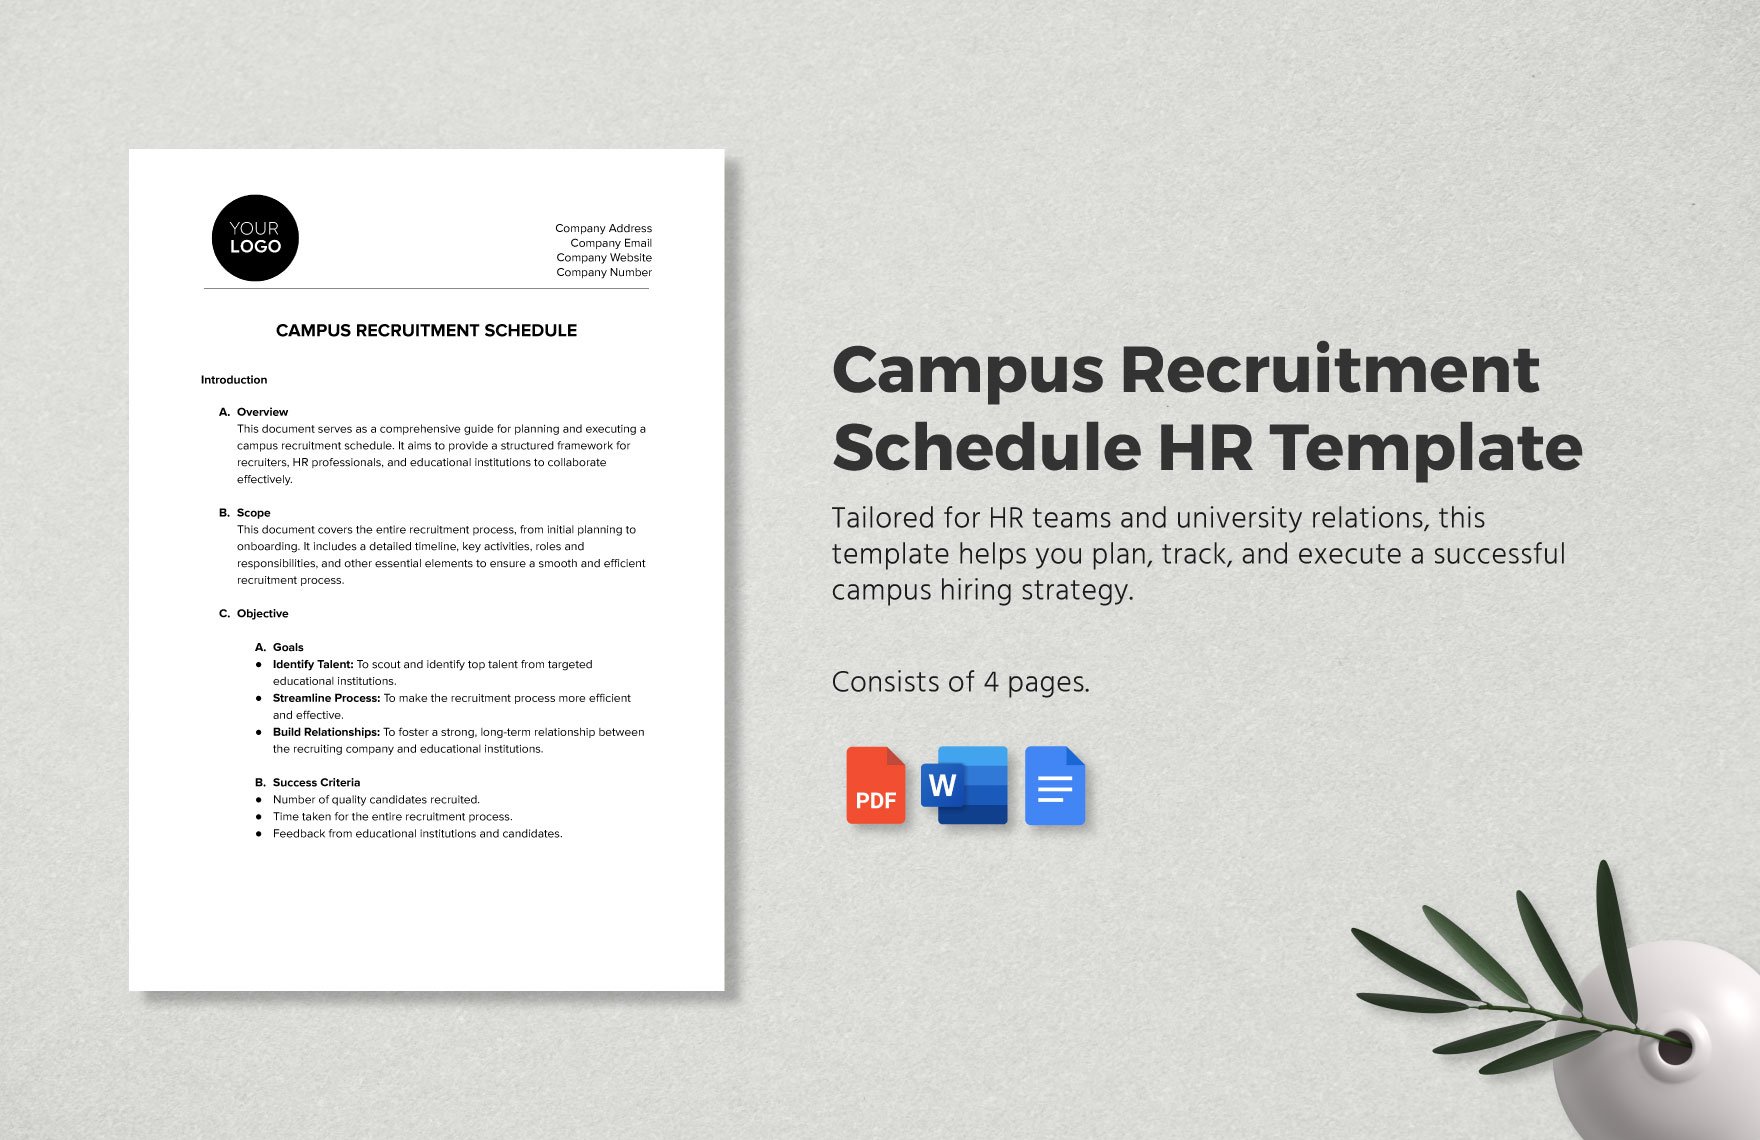 Campus Recruitment Schedule HR Template